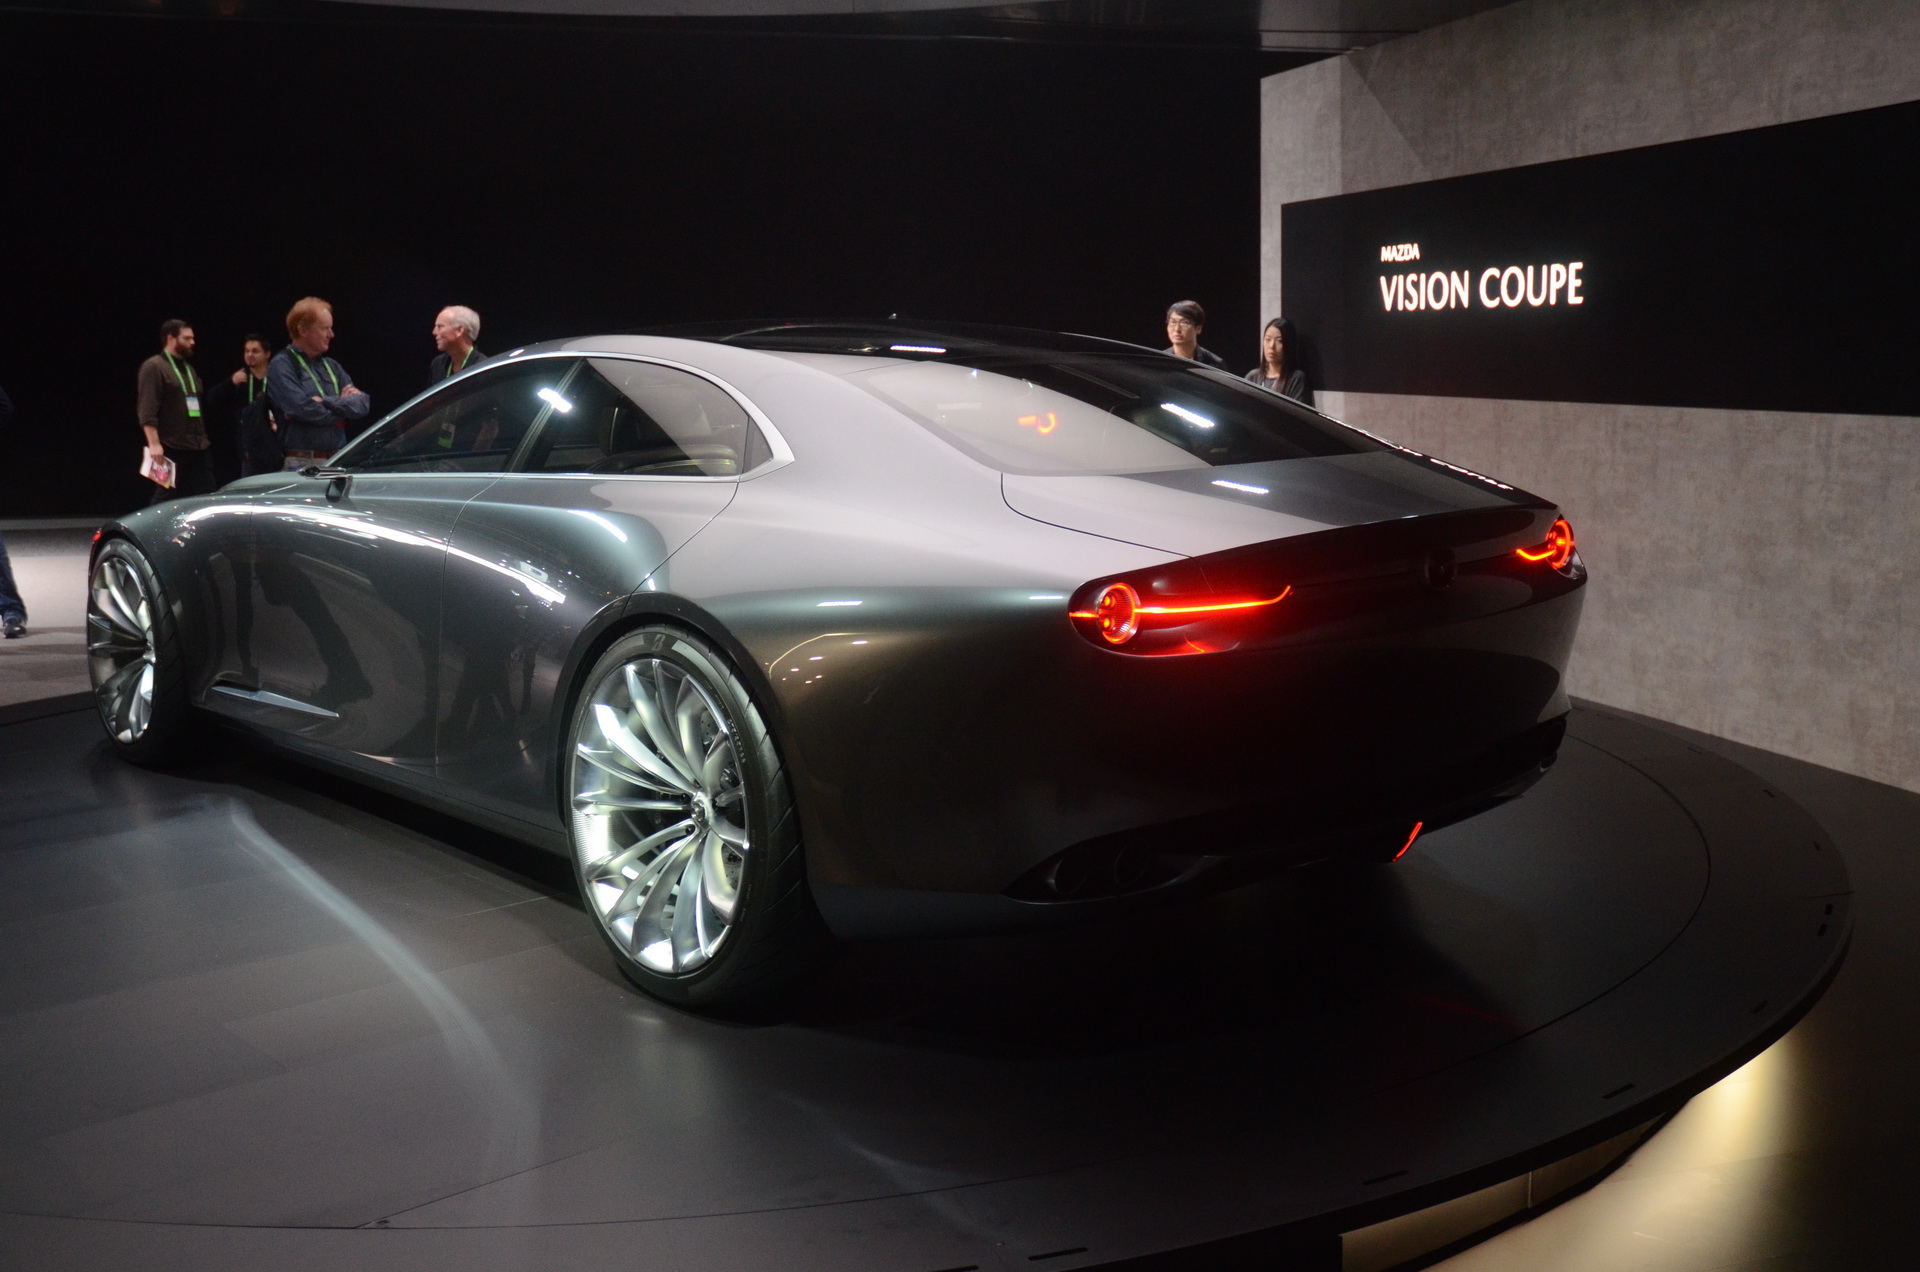 Mazda 6 thế hệ mới sẽ sang như xe BMW và có phiên bản coupe